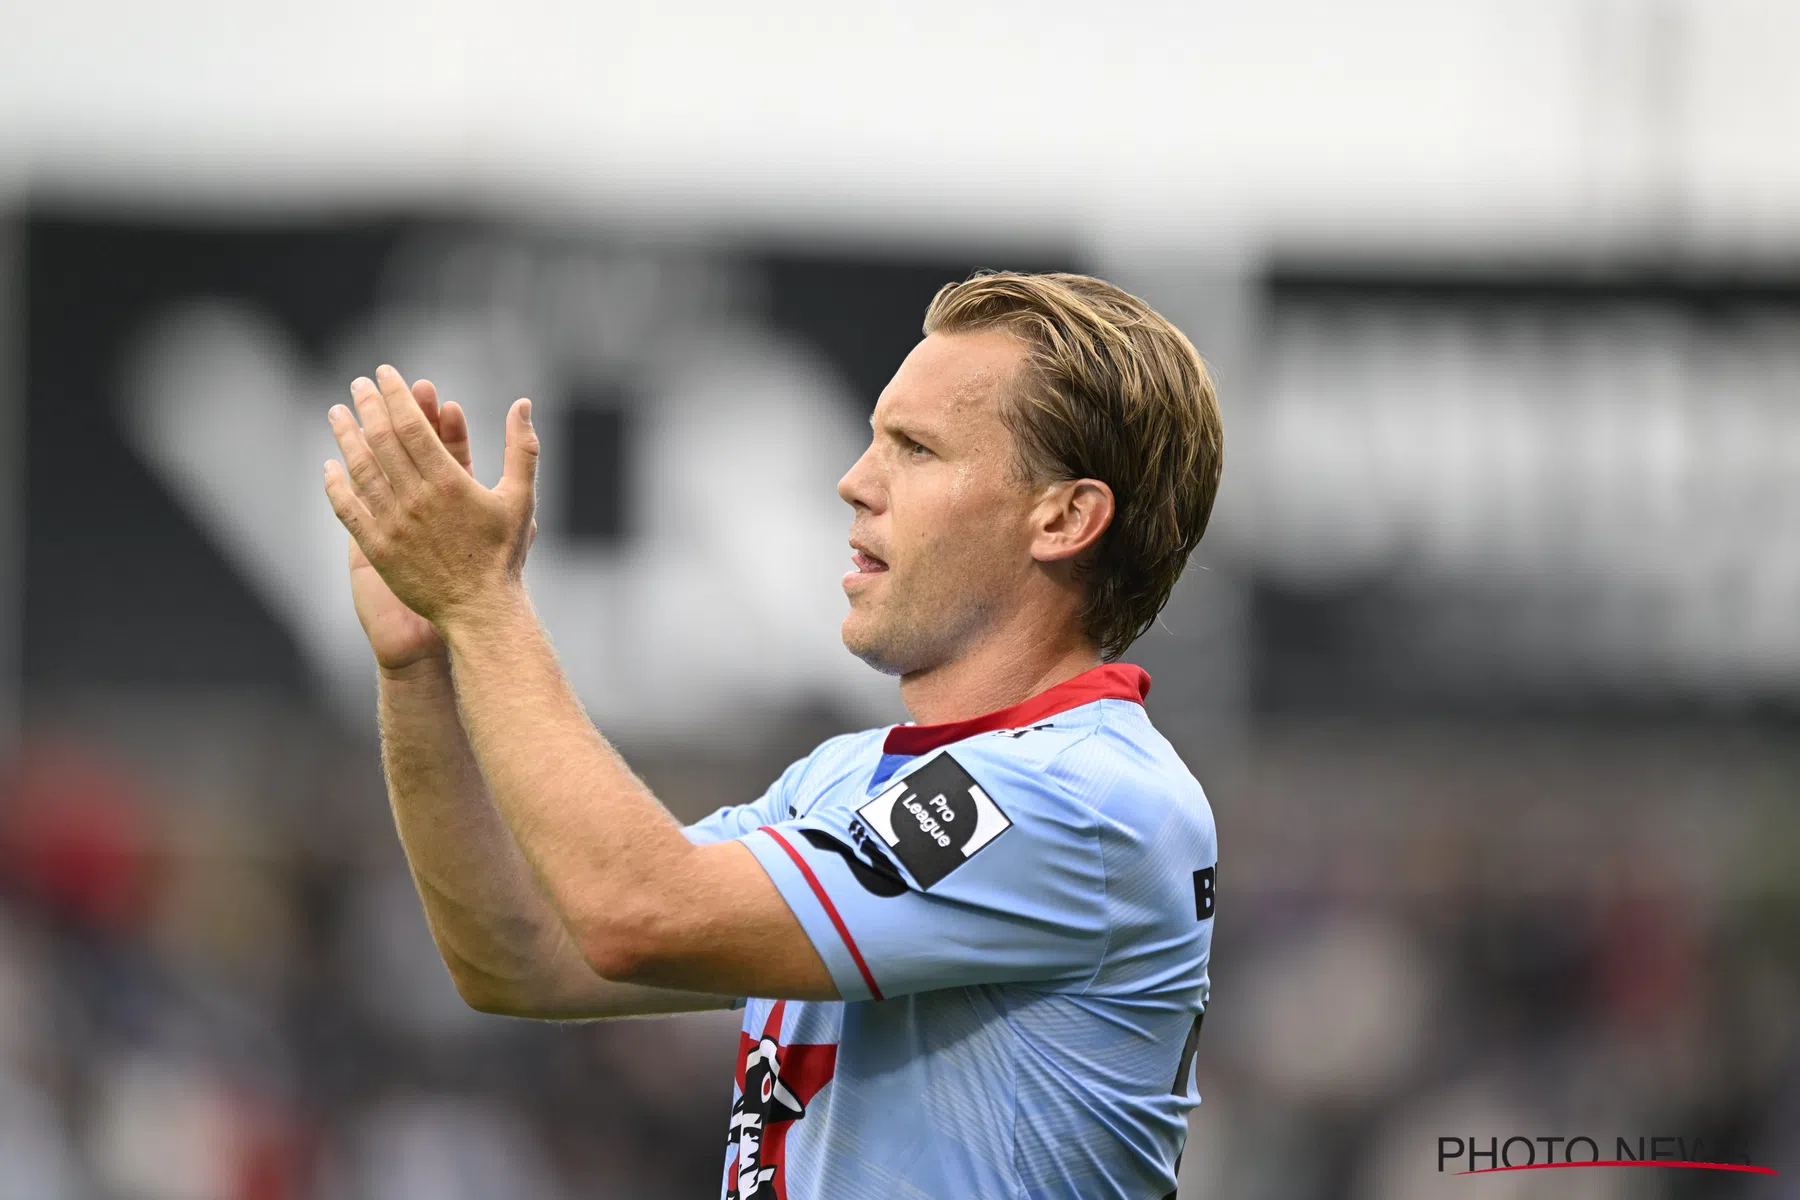 Ruud Vormer ex Club Brugge Zulte Waregem kondigt voetbalpensioen aan